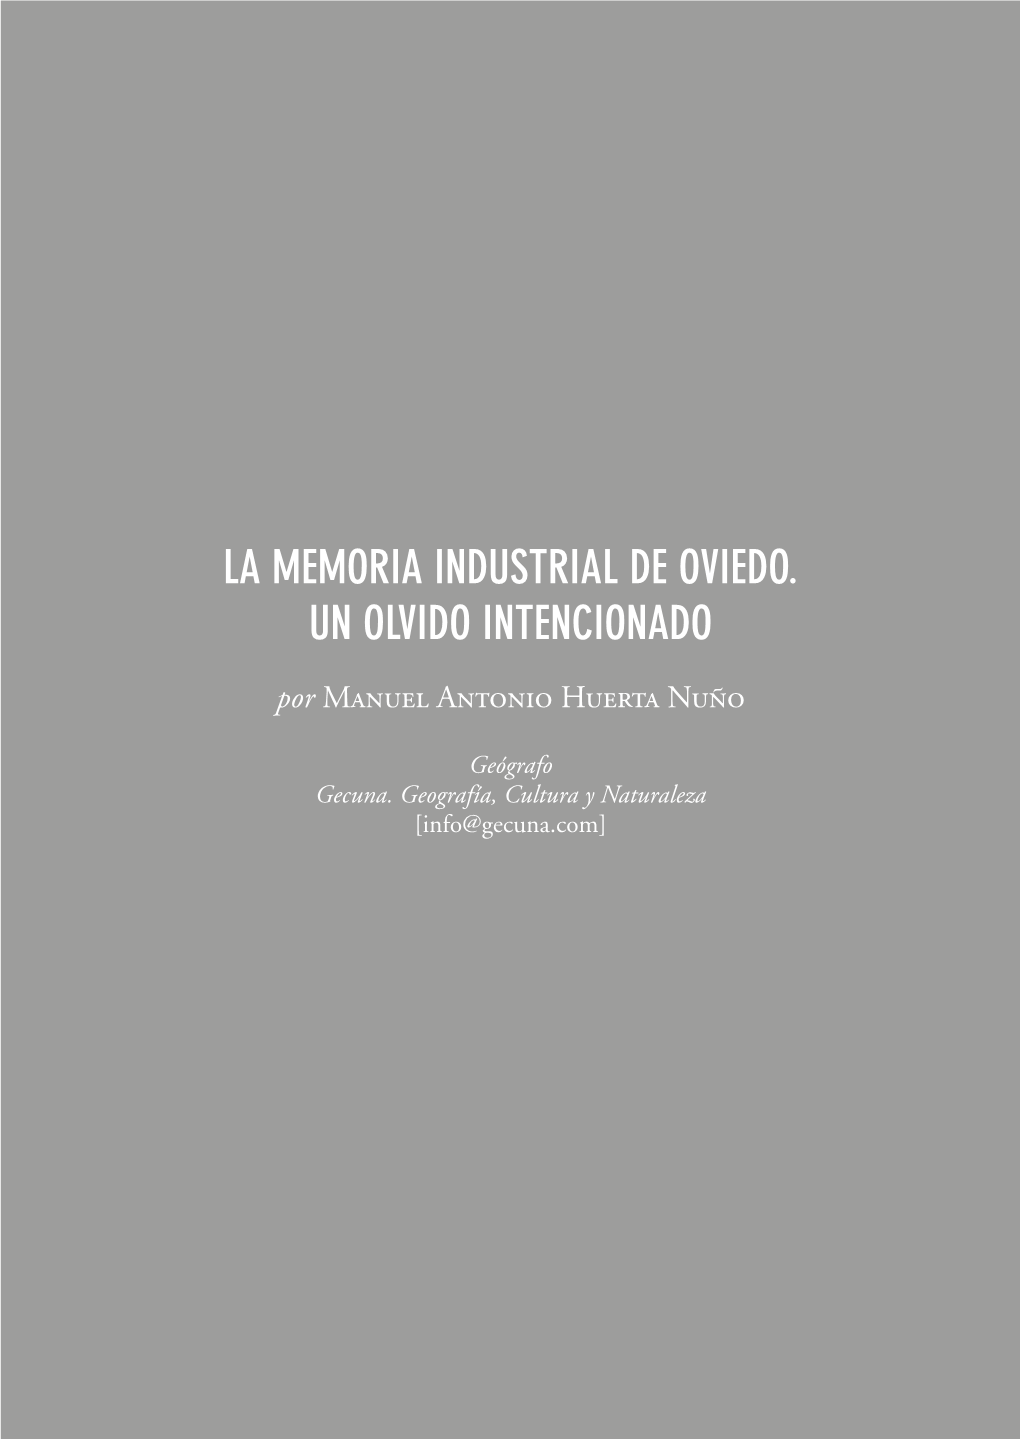 La Memoria Industrial De Oviedo. Un Olvido Intencionado